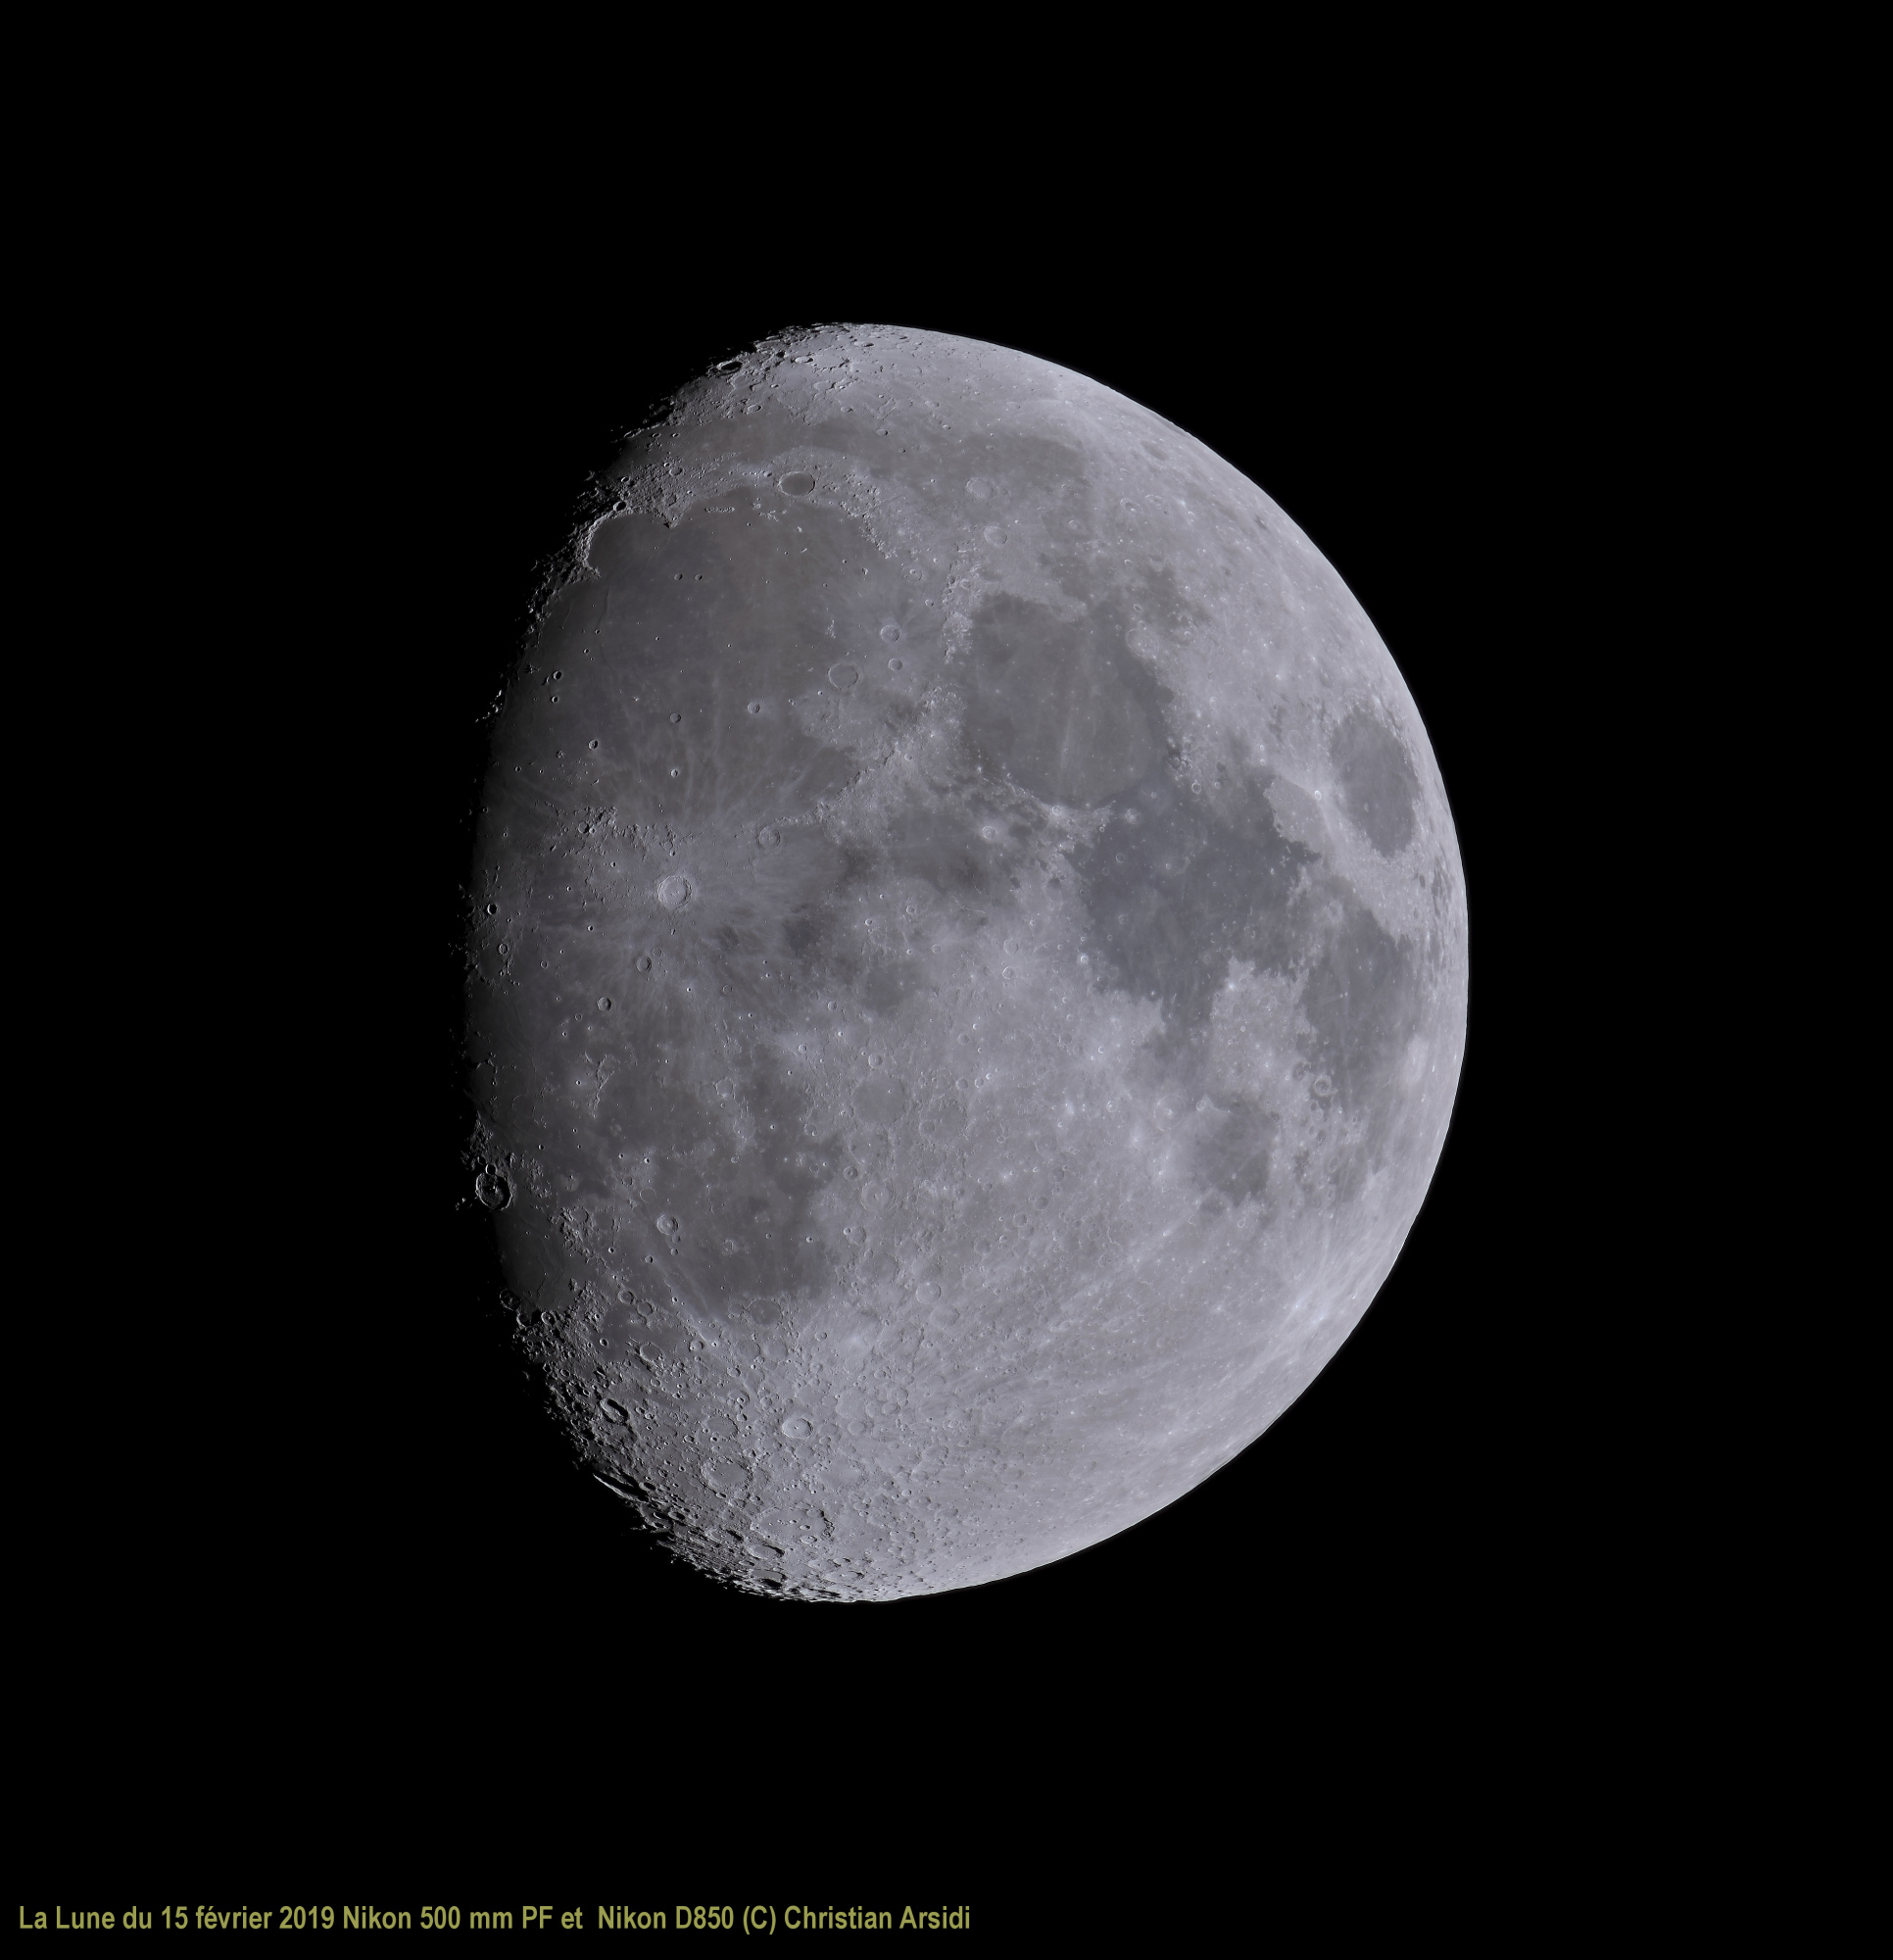 La Lune Gibeuse 40 images du 07.03.19 BV JPEG.jpg